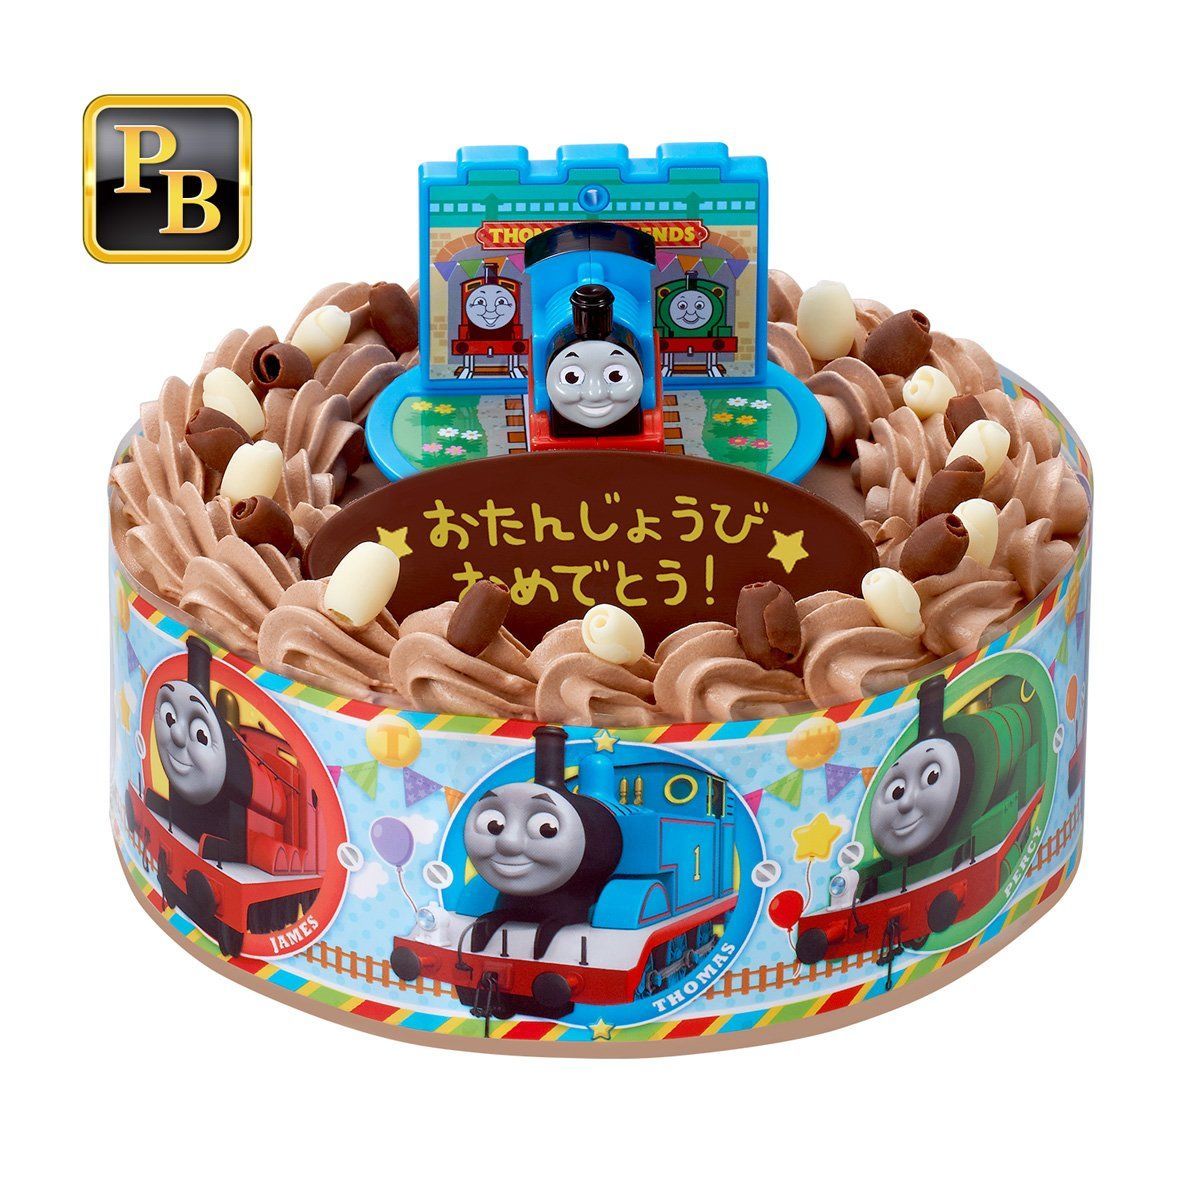 キャラデコお祝いケーキ きかんしゃトーマス チョコ 5号サイズ おもちゃ キャラクター玩具 バンダイナムコグループ公式通販サイト